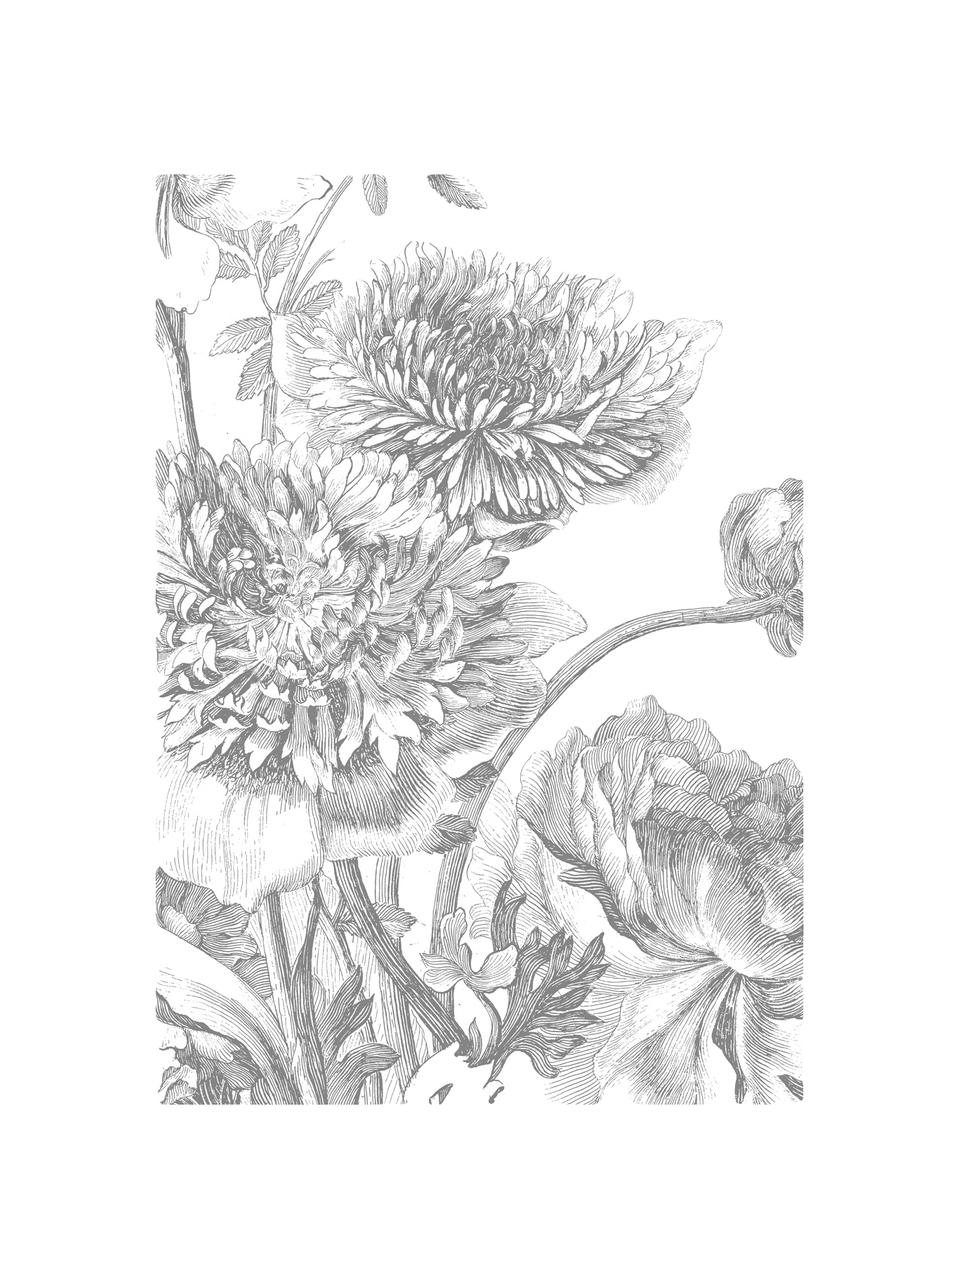 Fototapeta Engraved Flowers, Włóknina, przyjazna dla środowiska, biodegradowalna, Szary, biały, S 389 x W 280 cm